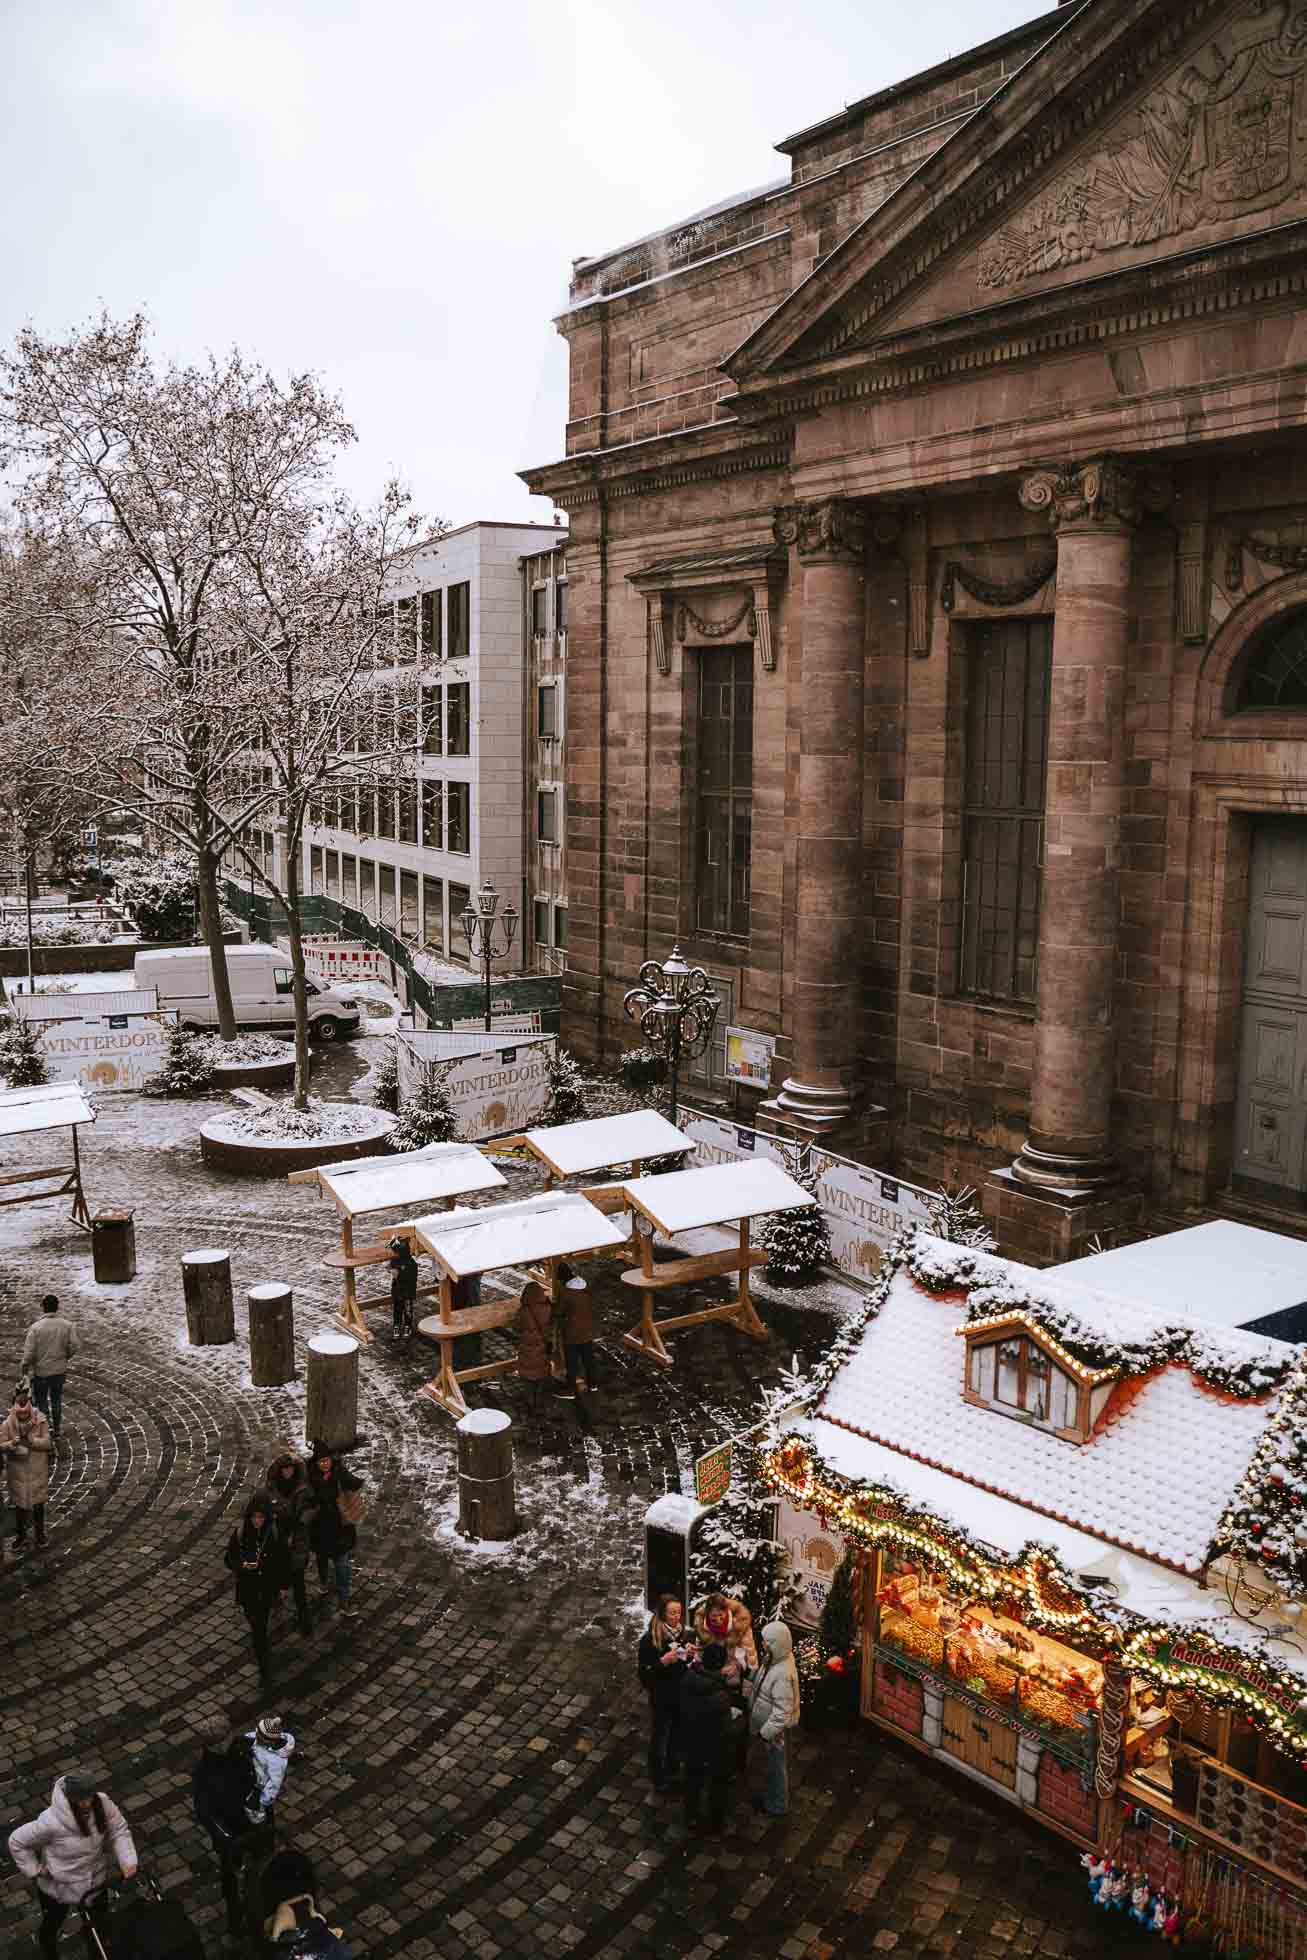 Un buen plan que hacer en Nuremberg en Navidad, es acercarse al pueblo invernal Winterrad que hay en Jakobsplatz y subir a Ferries Wheel